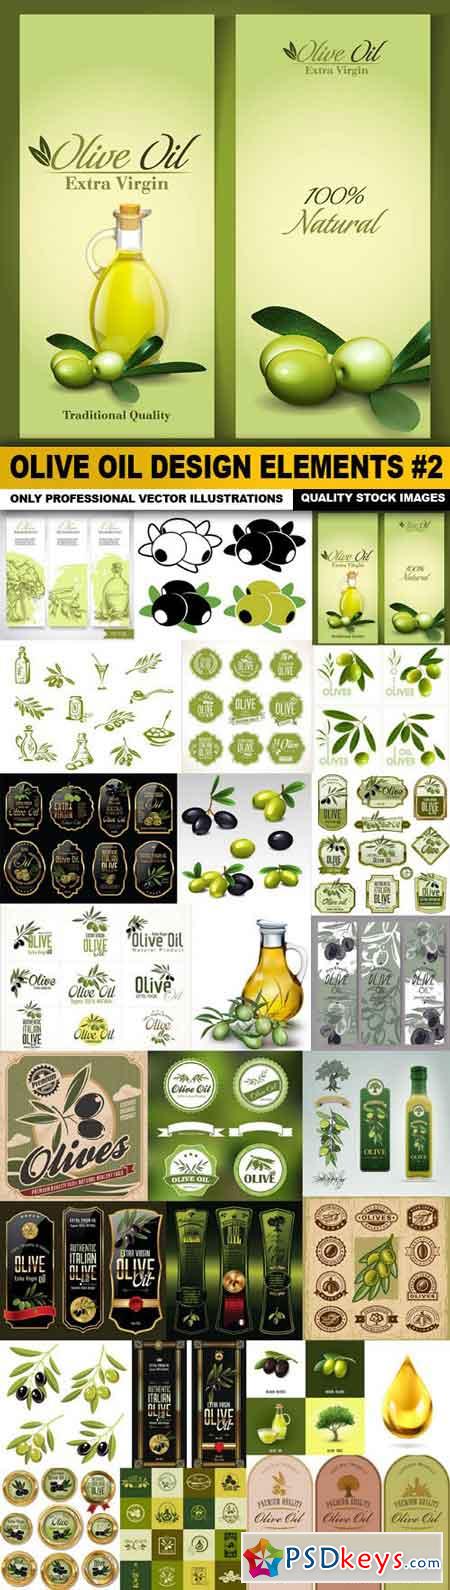 Olive Oil Design Elements #2 - 25 Vector